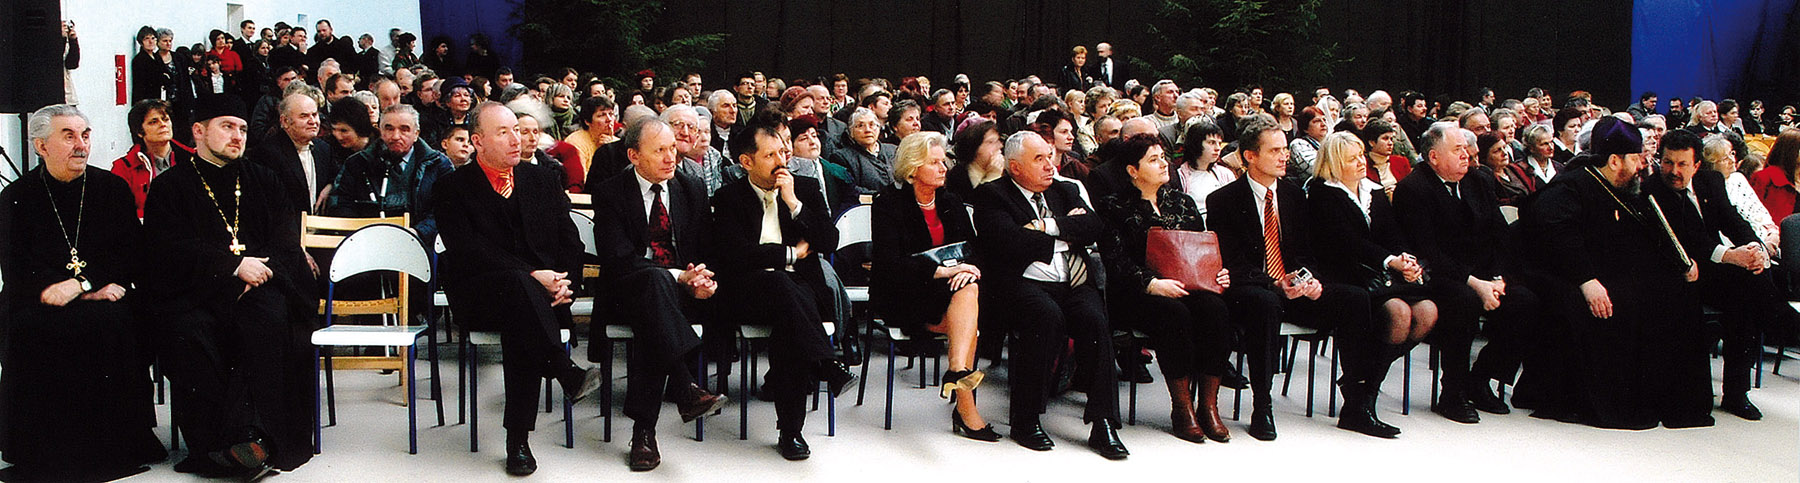 Licznie zgromadzona publiczność XIII MFKW - Terespol 2013